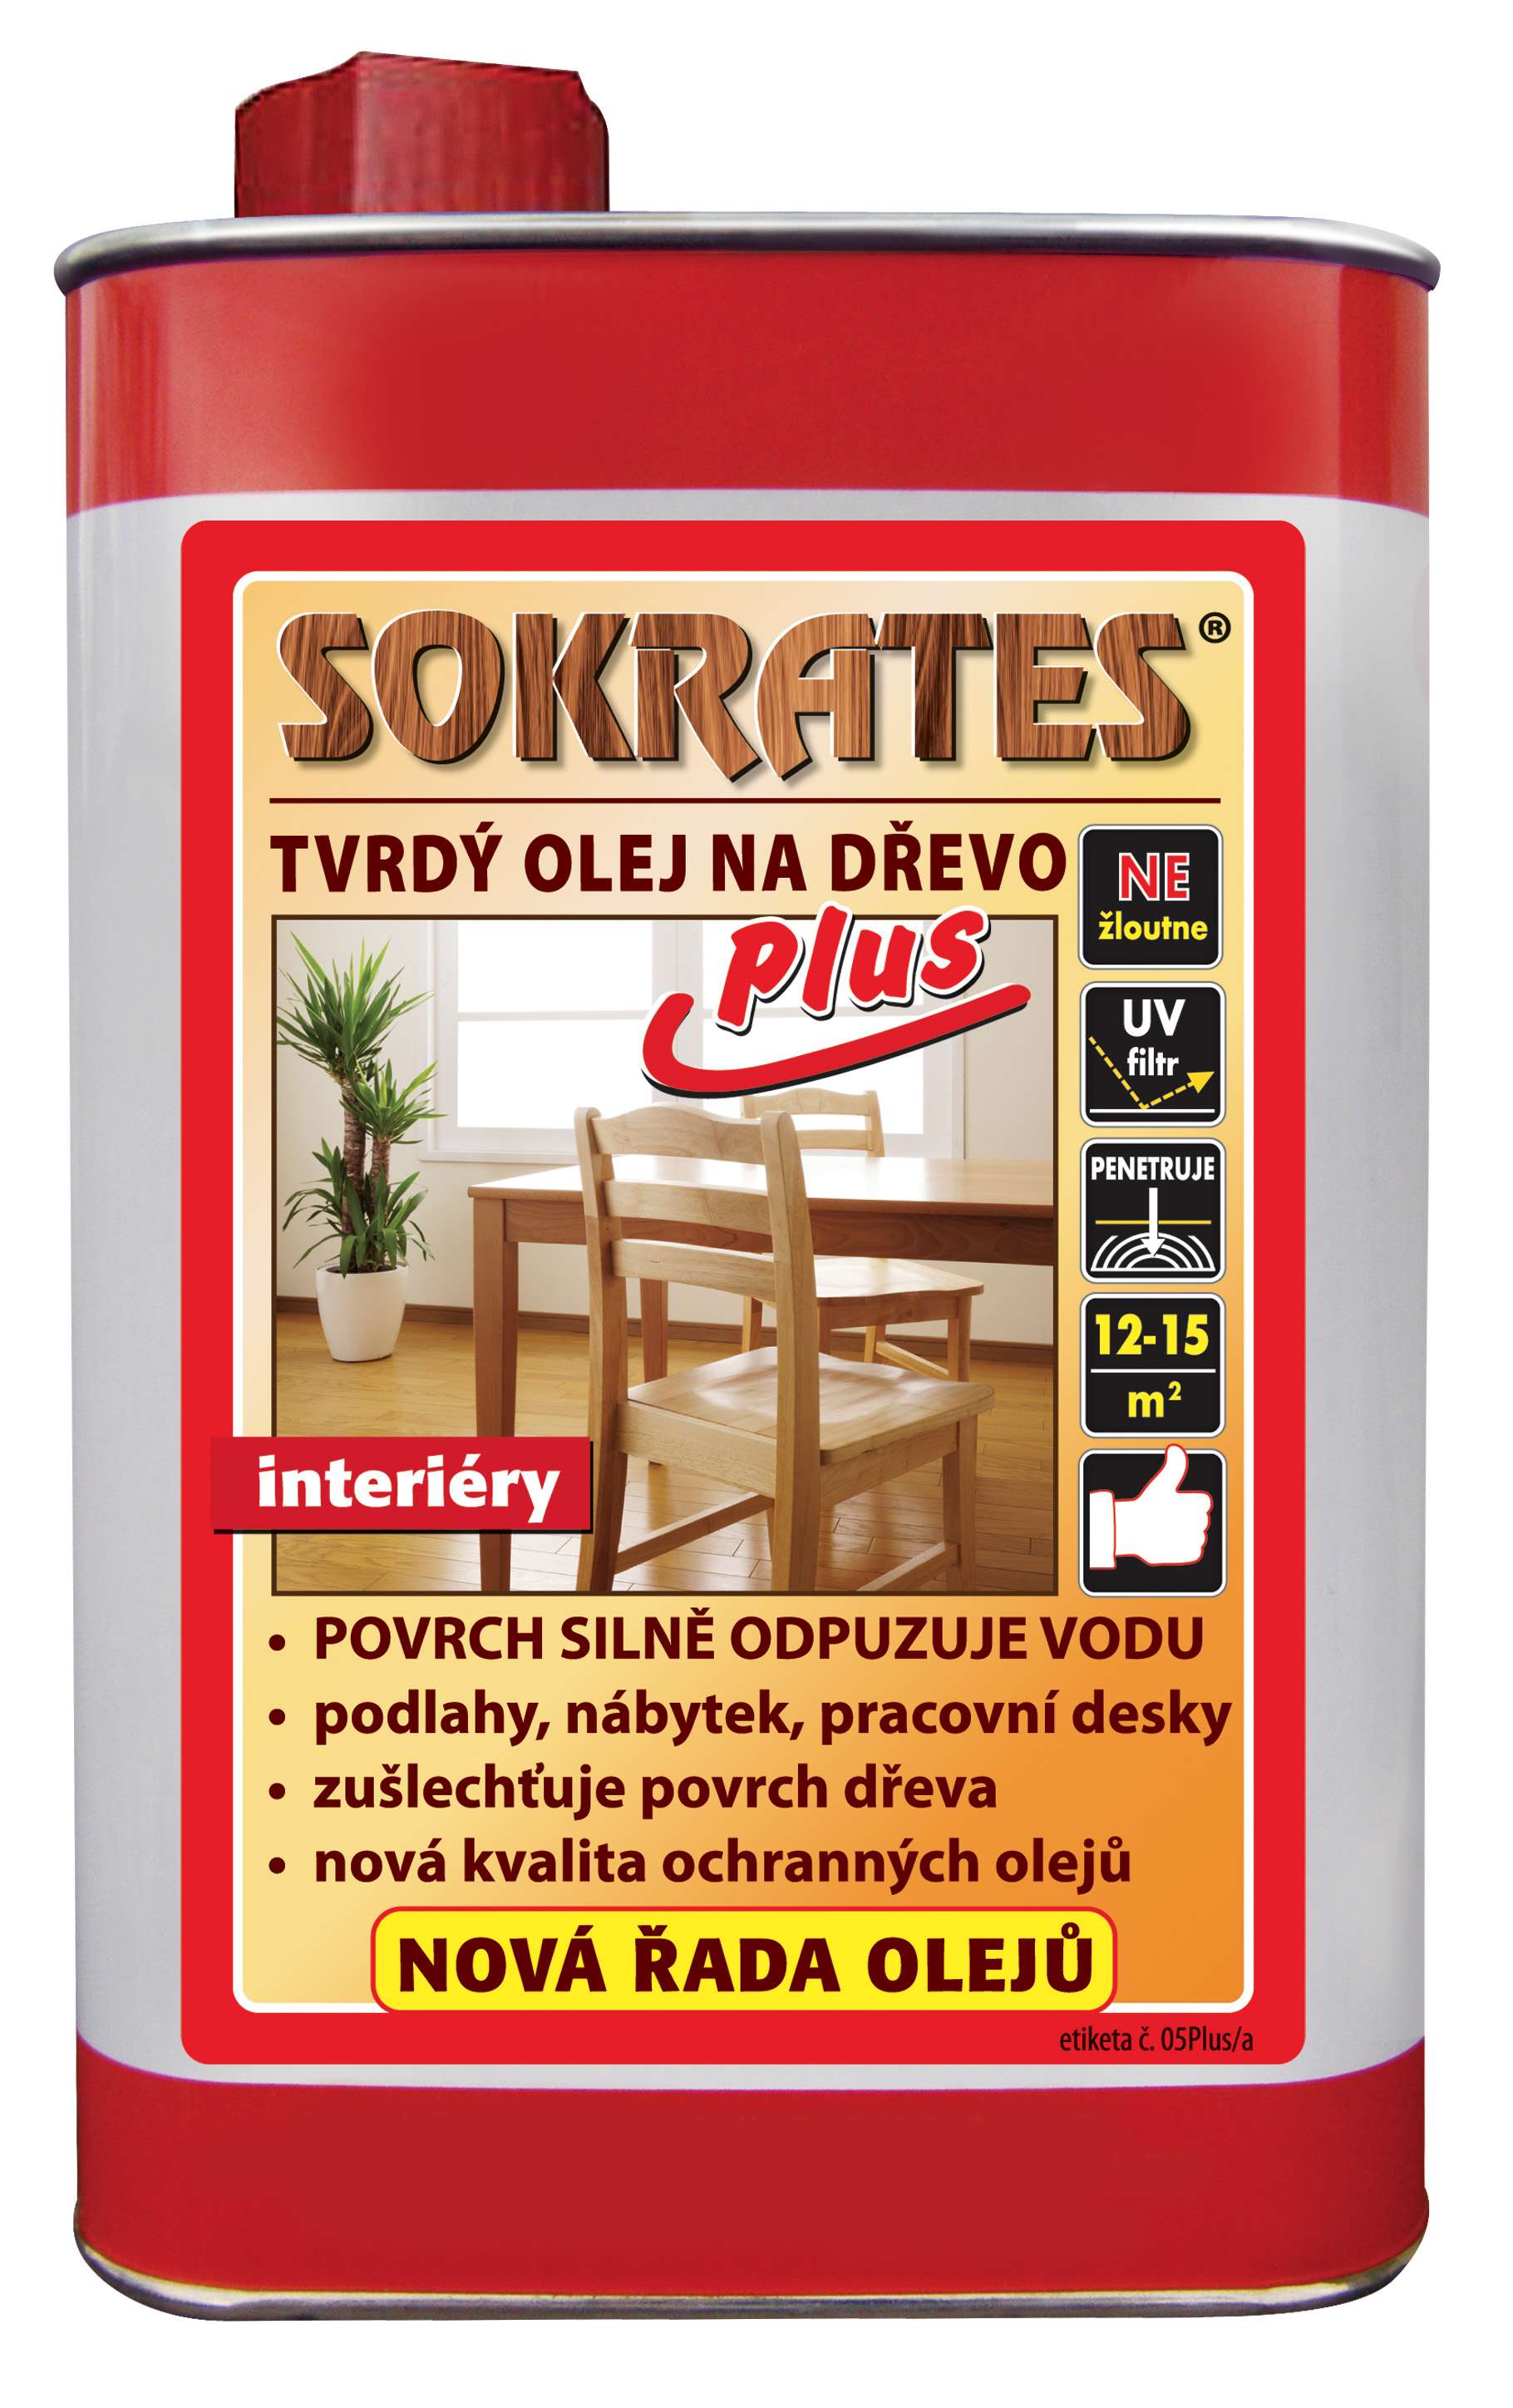 Sokrates Tvrdý olej na dřevo Plus * Tvrdý olej s vysokou plnivostí na dřevěné podklady. 1